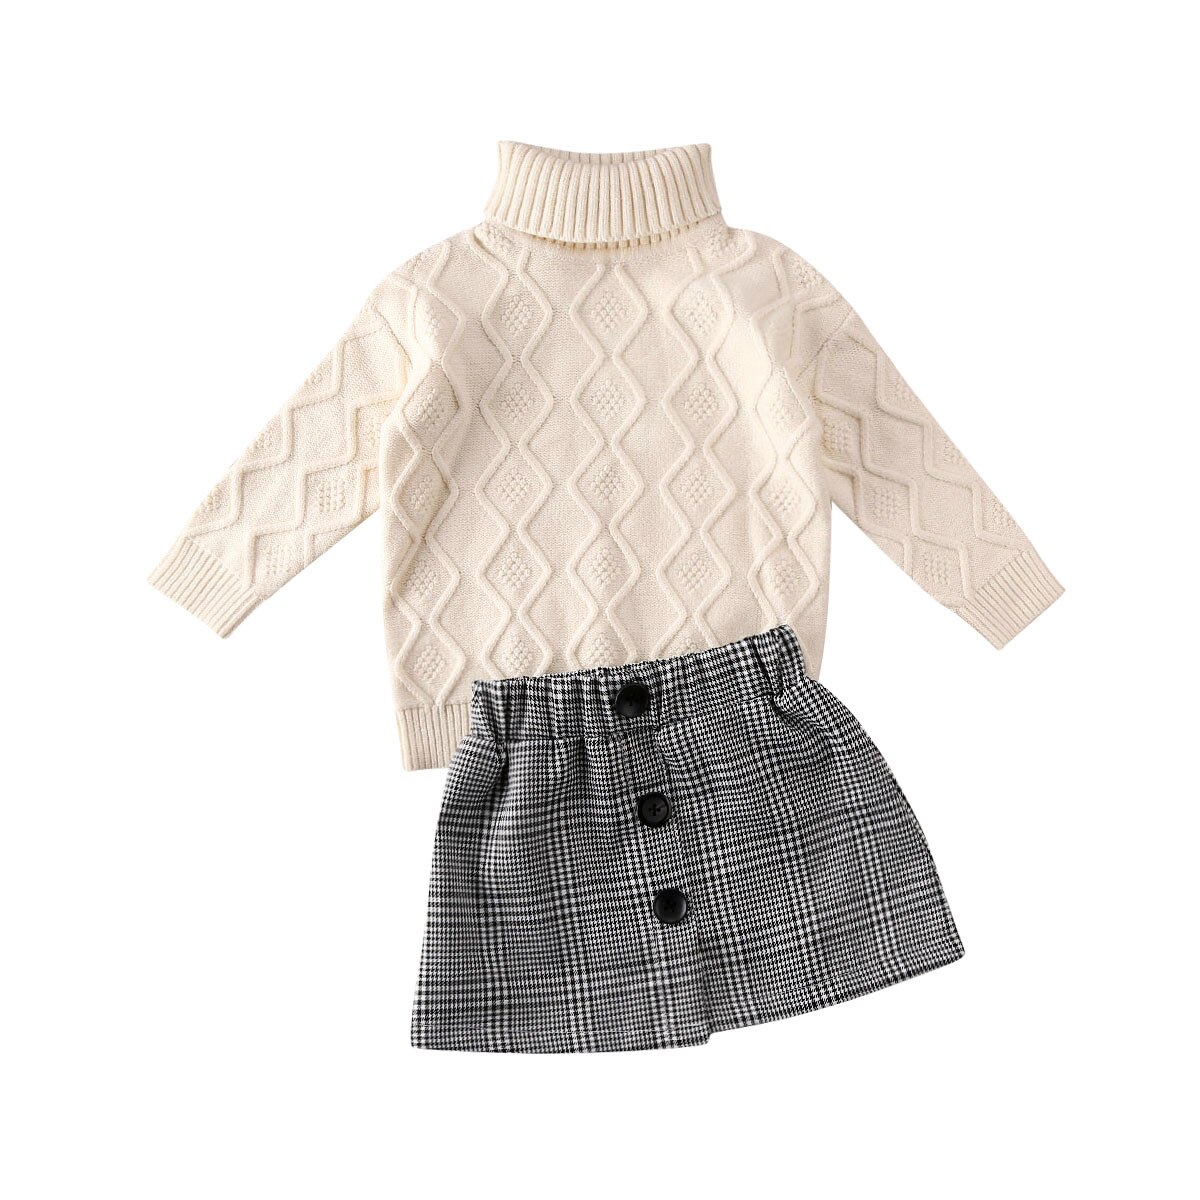 Toddler baby piger vintertøj strikkede sweater toppe + nederdel tøj sæt  us 2 stk: 4t